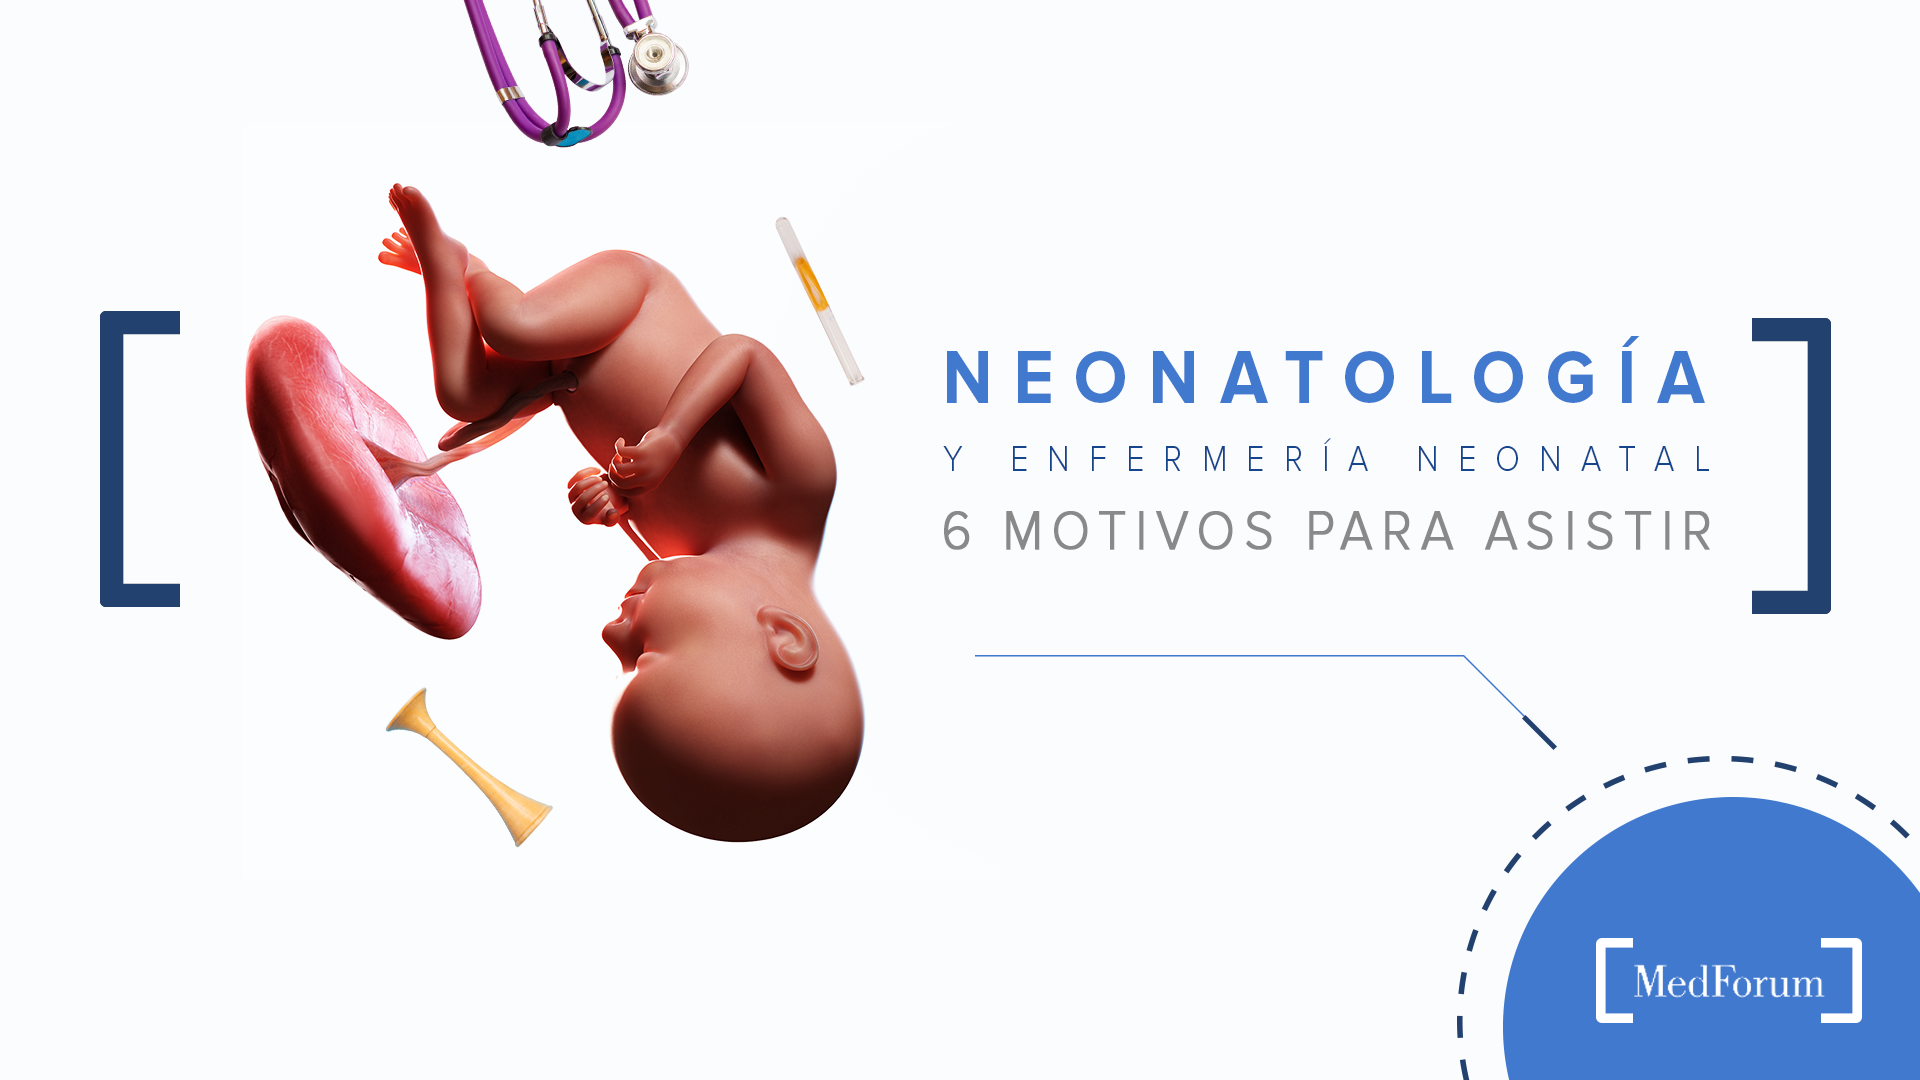 Neonatología y enfermería neonatal